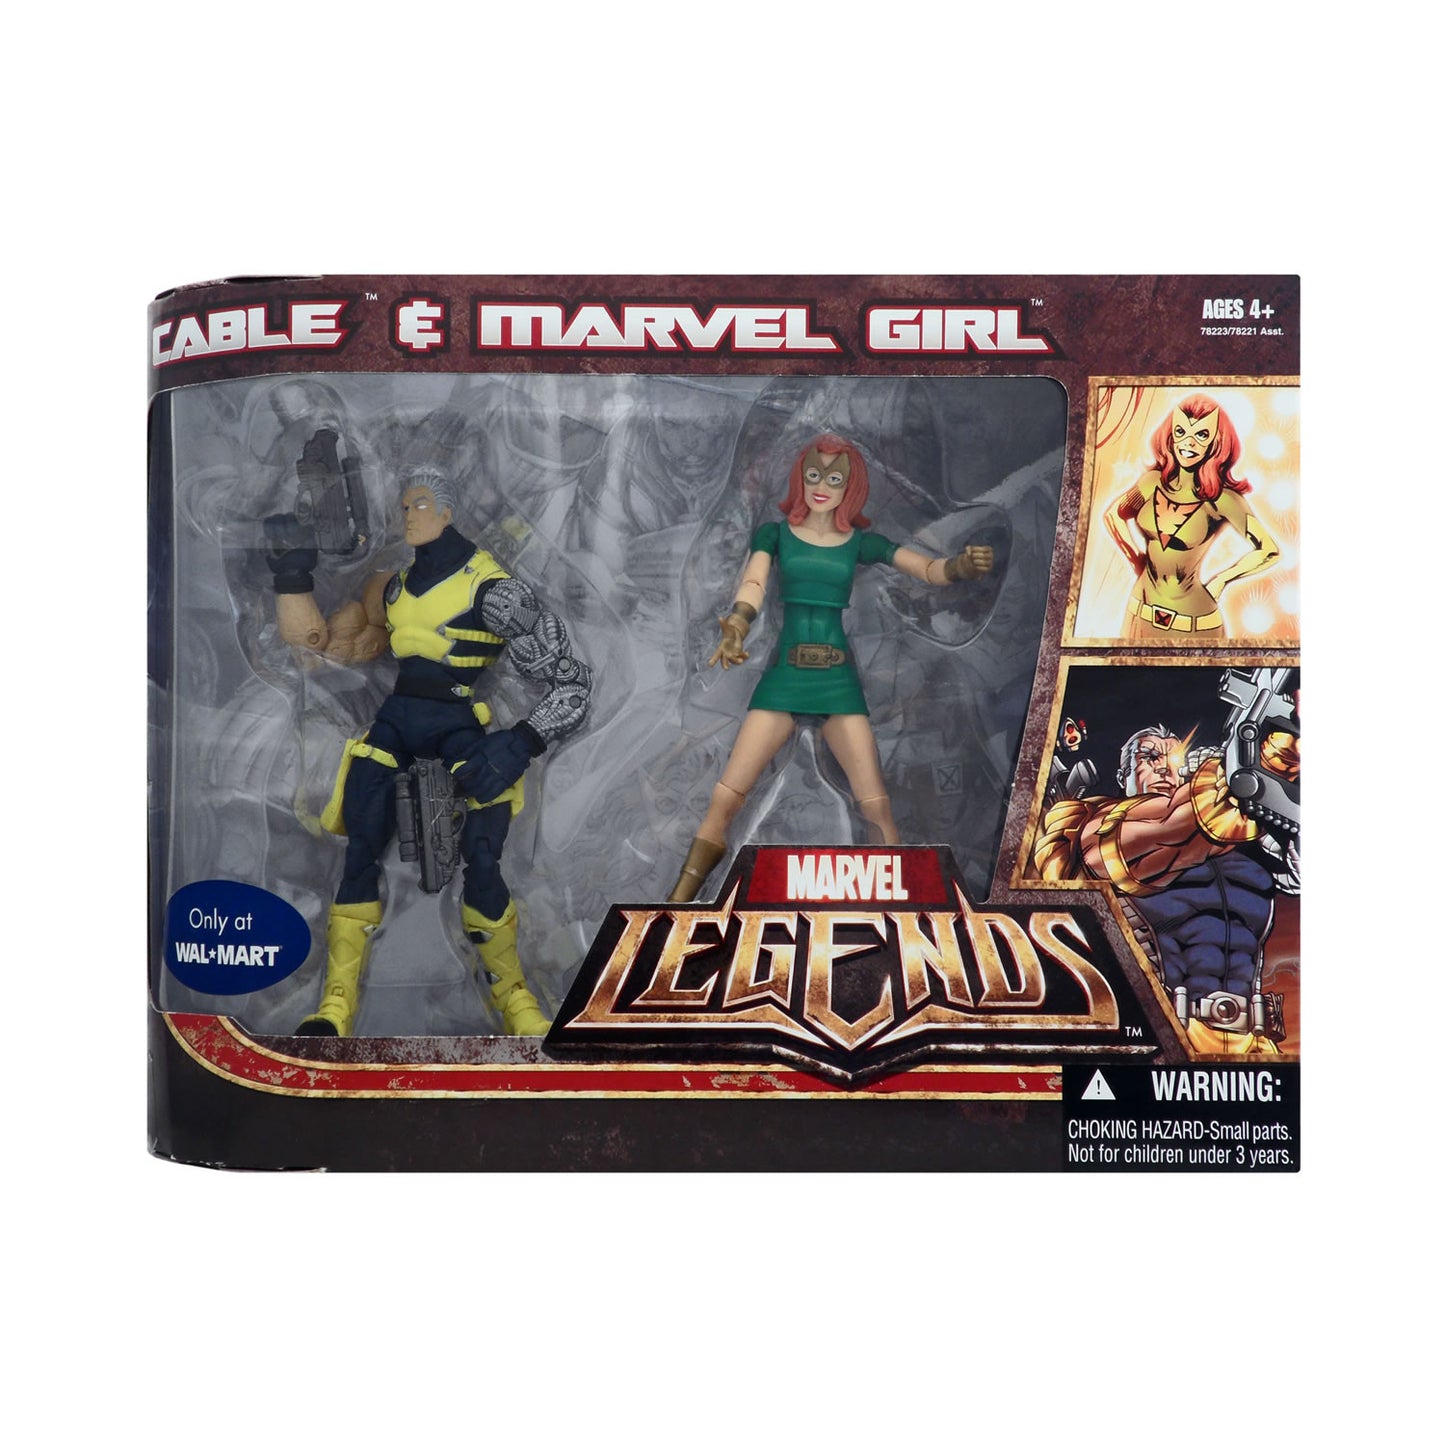 Marvel Legends Cable & Marvel Girl